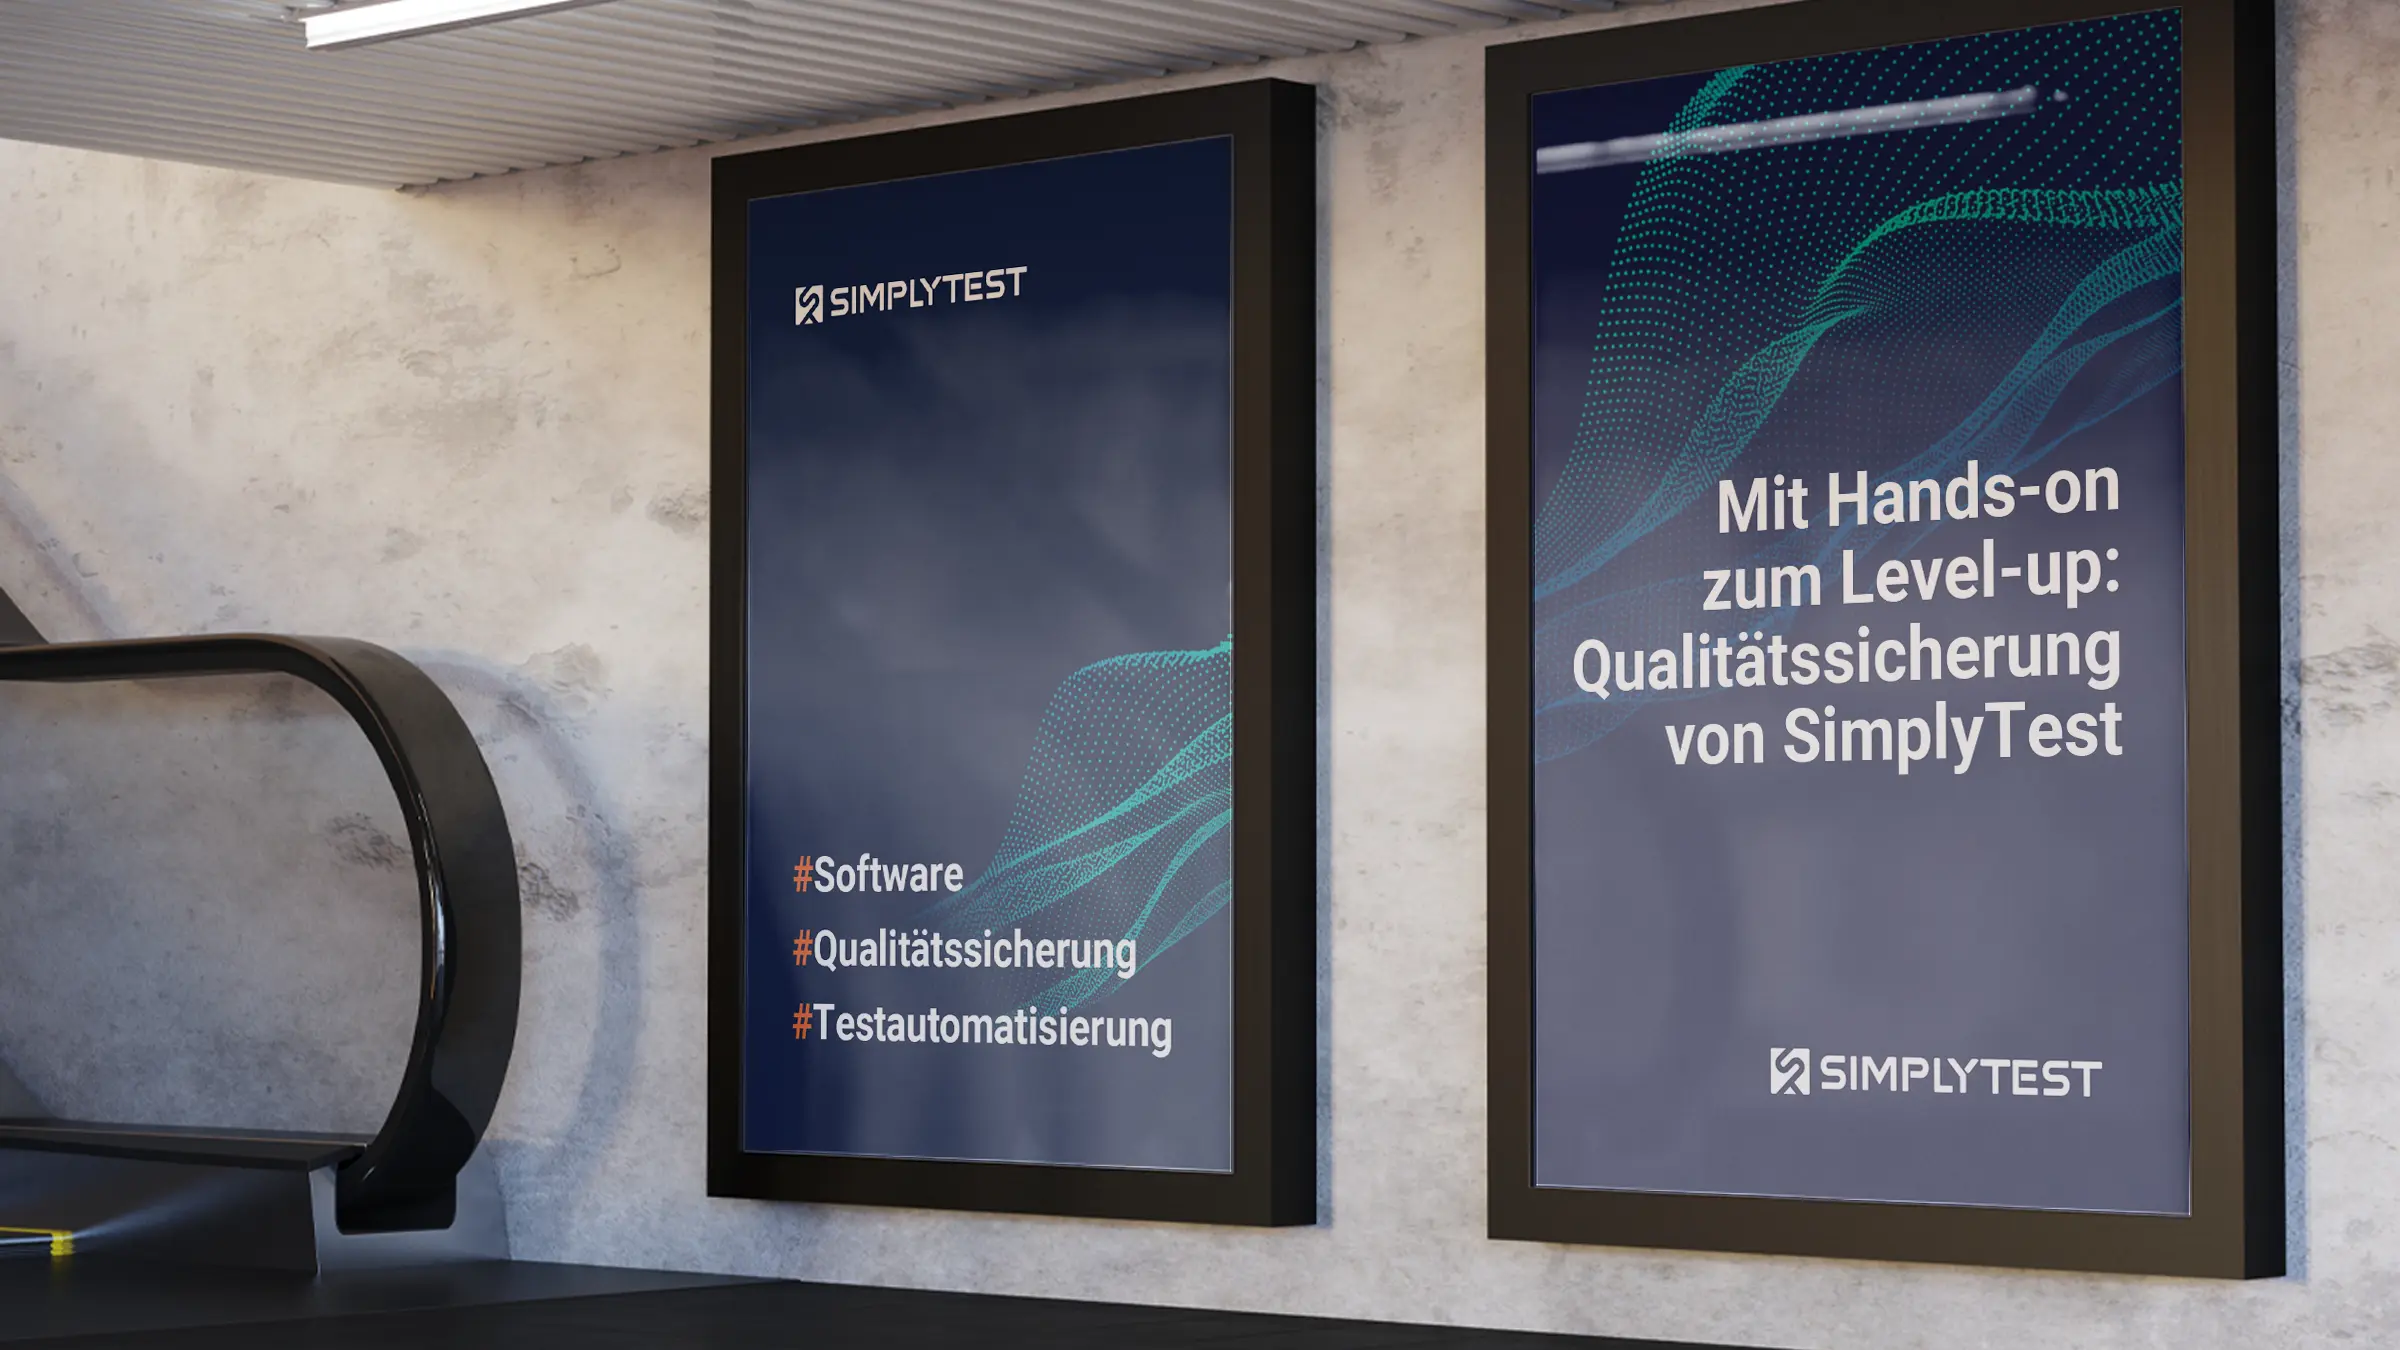 Zwei U-Bahn-Plakate mit Werbung zu den Themen Software, Qualitätssicherung und Testautomatisierung im Corporate Design von SimplyTest